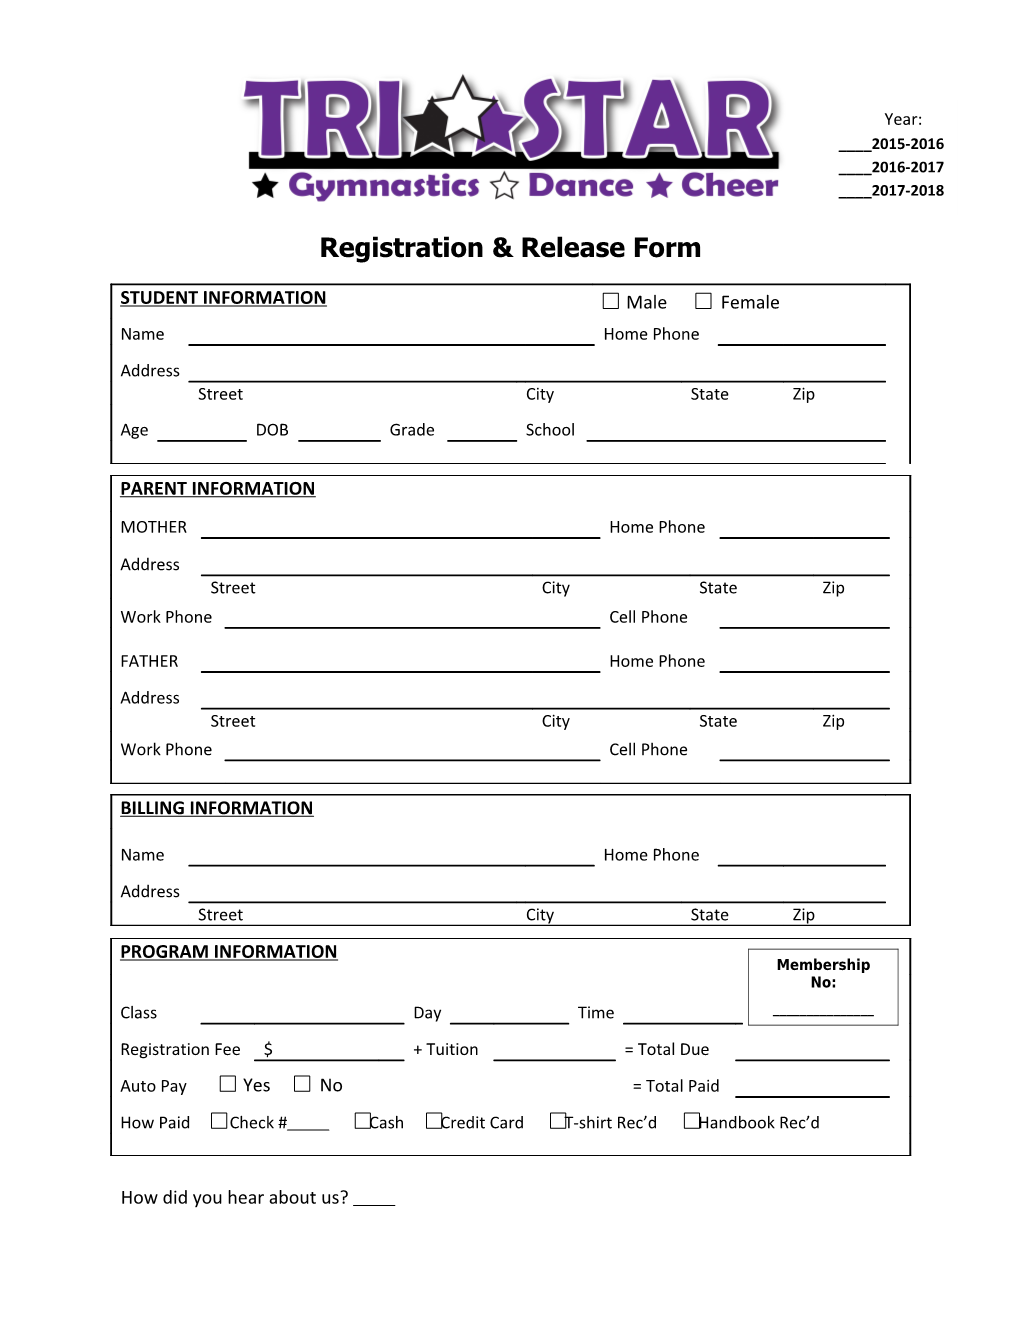 Registration & Release Form